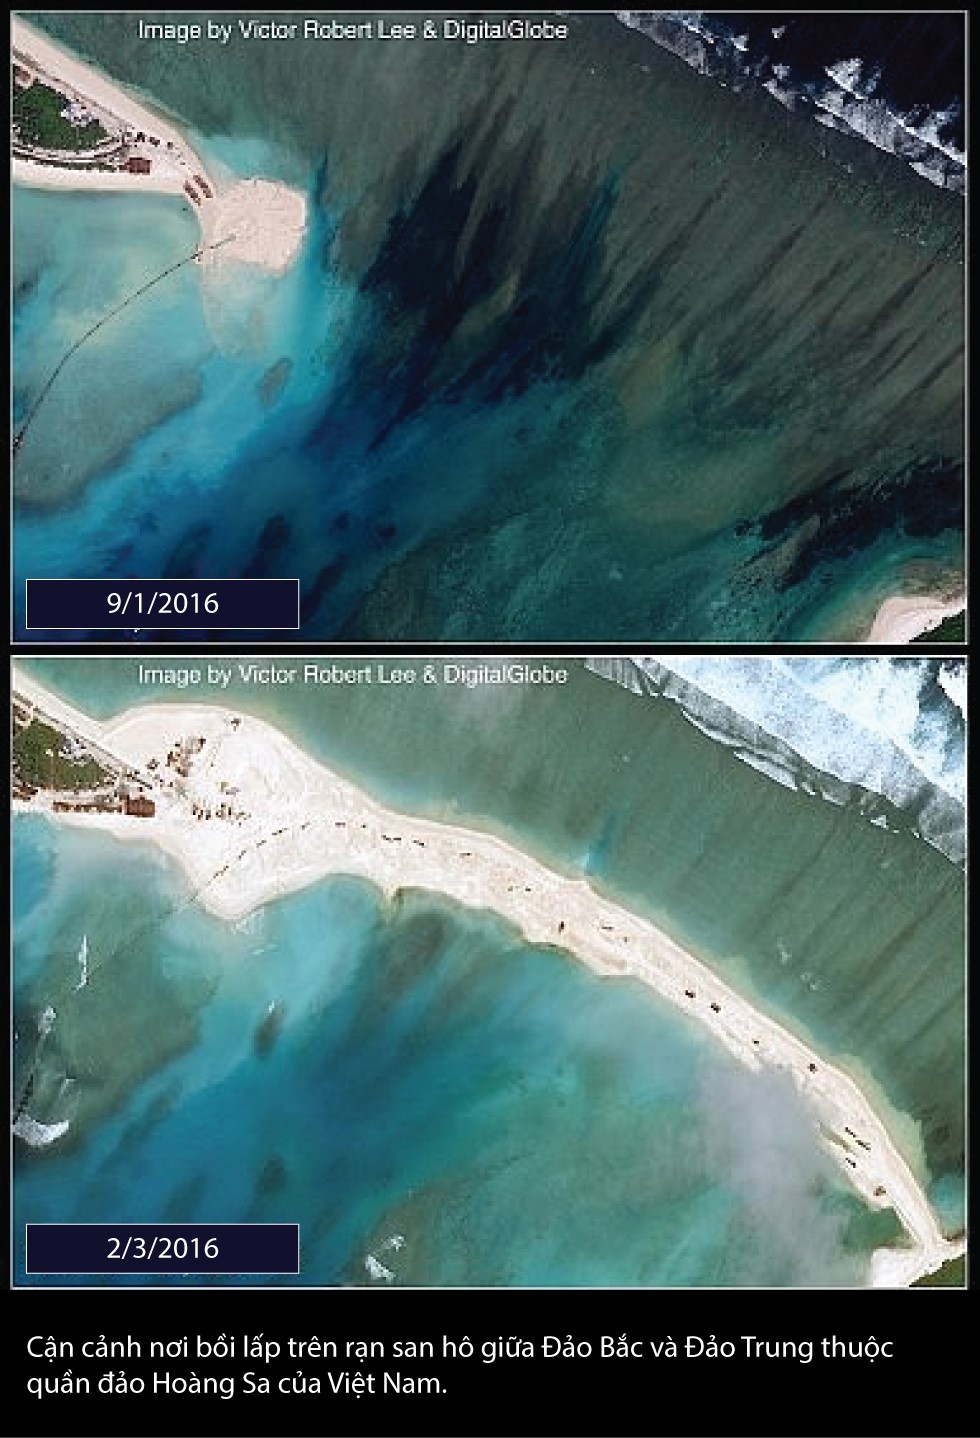 Cận cảnh nơi bồi lấp trên rạn san hô giữa đảo Bắc và đảo Giữa thuộc quần đảo Hoàng Sa của Biển Đông Việt Nam